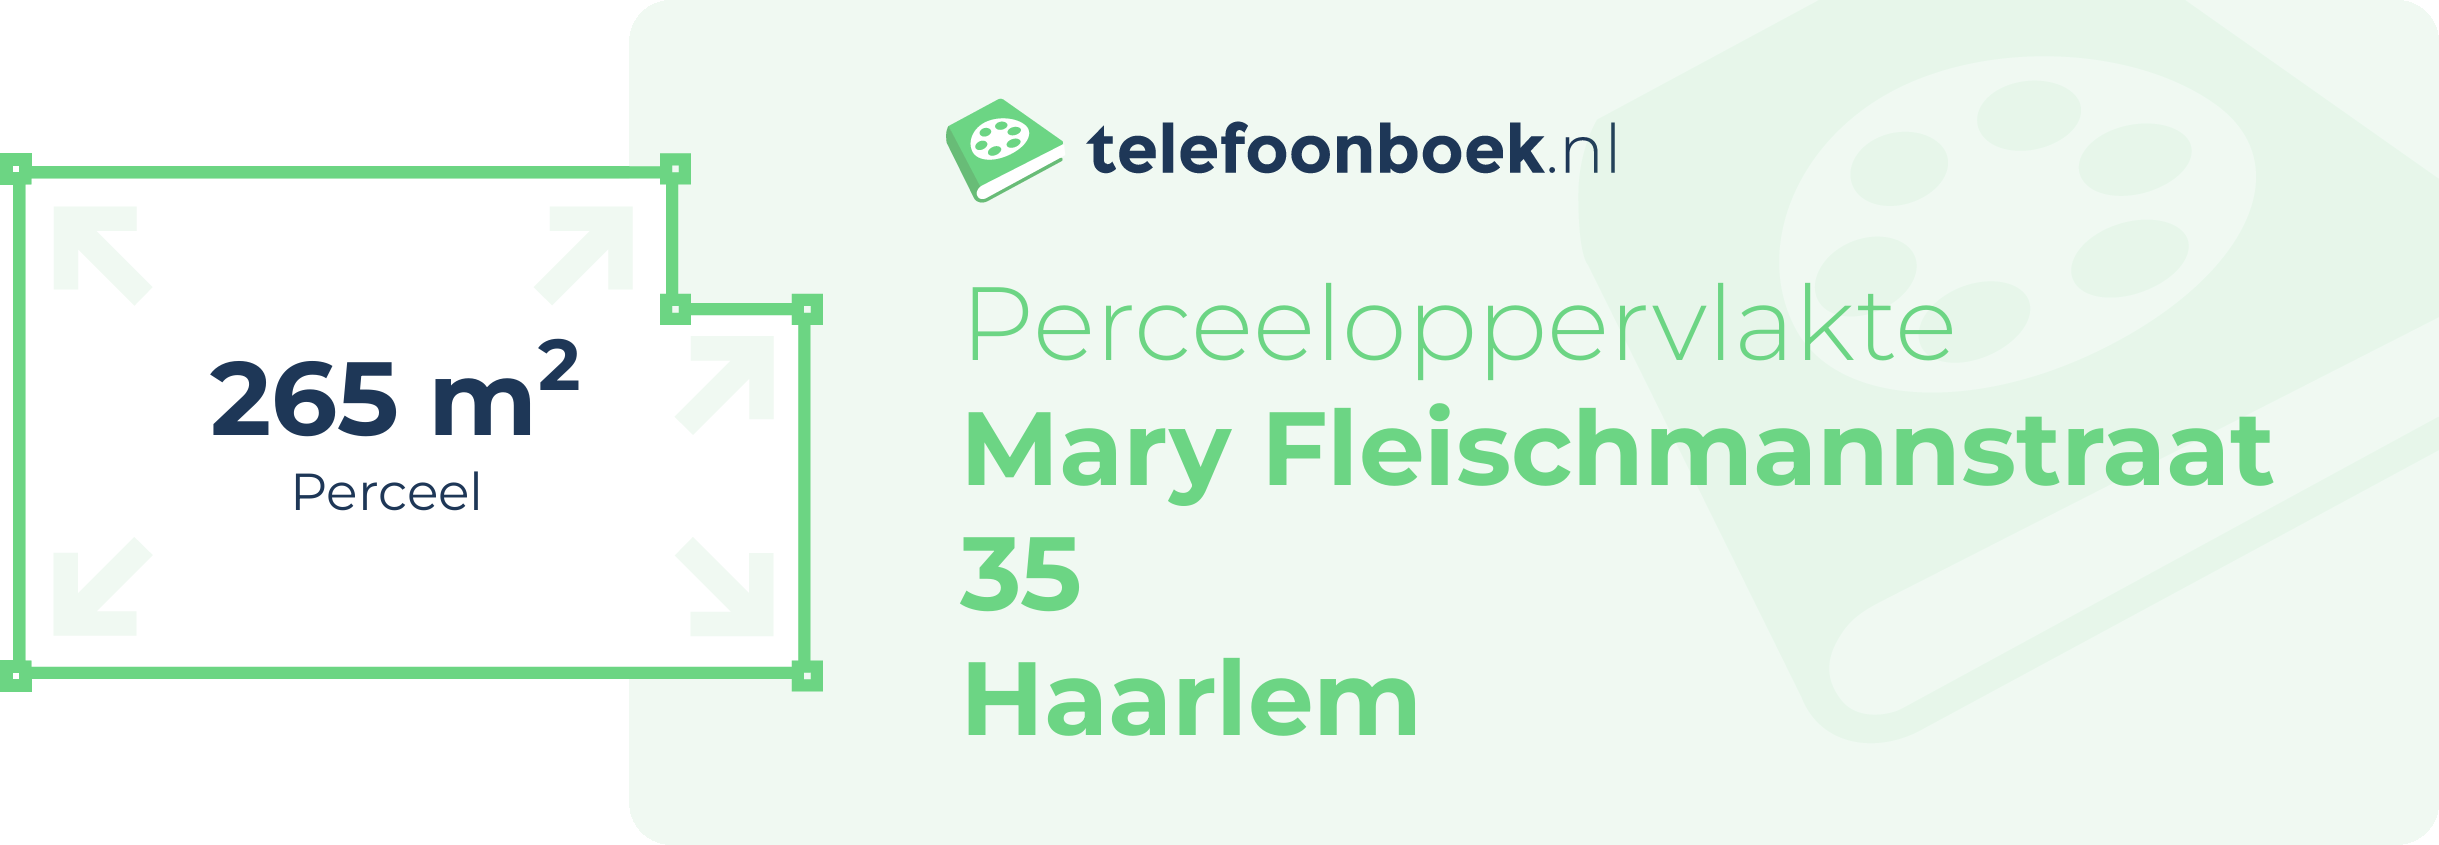 Perceeloppervlakte Mary Fleischmannstraat 35 Haarlem